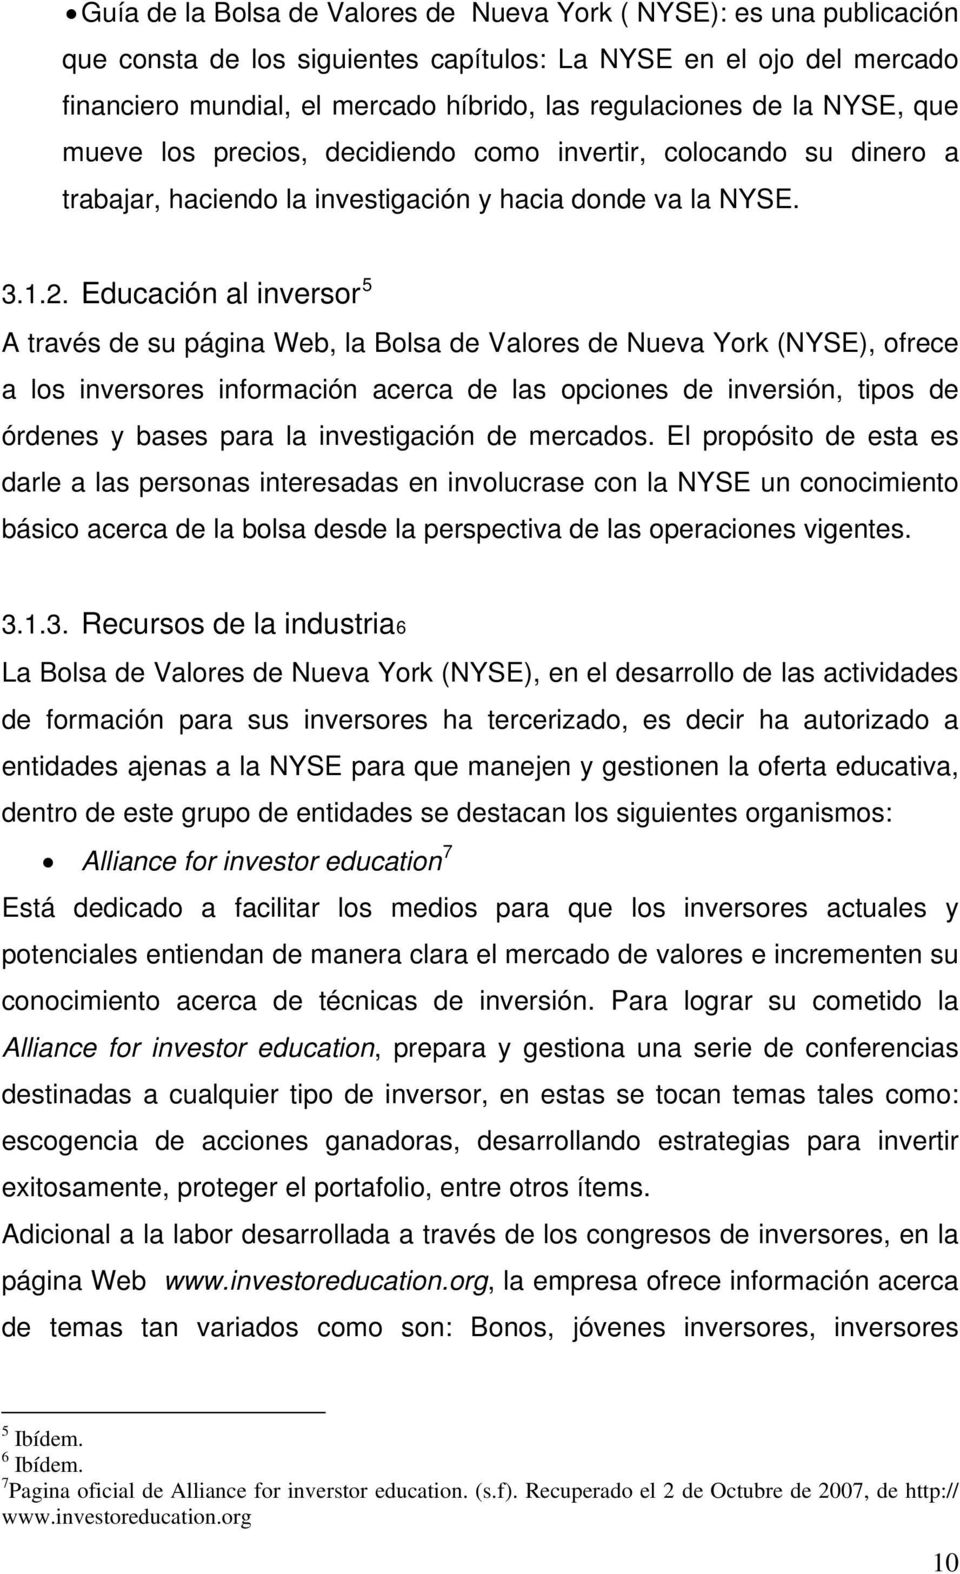 Educación al inversor 5 A través de su página Web, la Bolsa de Valores de Nueva York (NYSE), ofrece a los inversores información acerca de las opciones de inversión, tipos de órdenes y bases para la